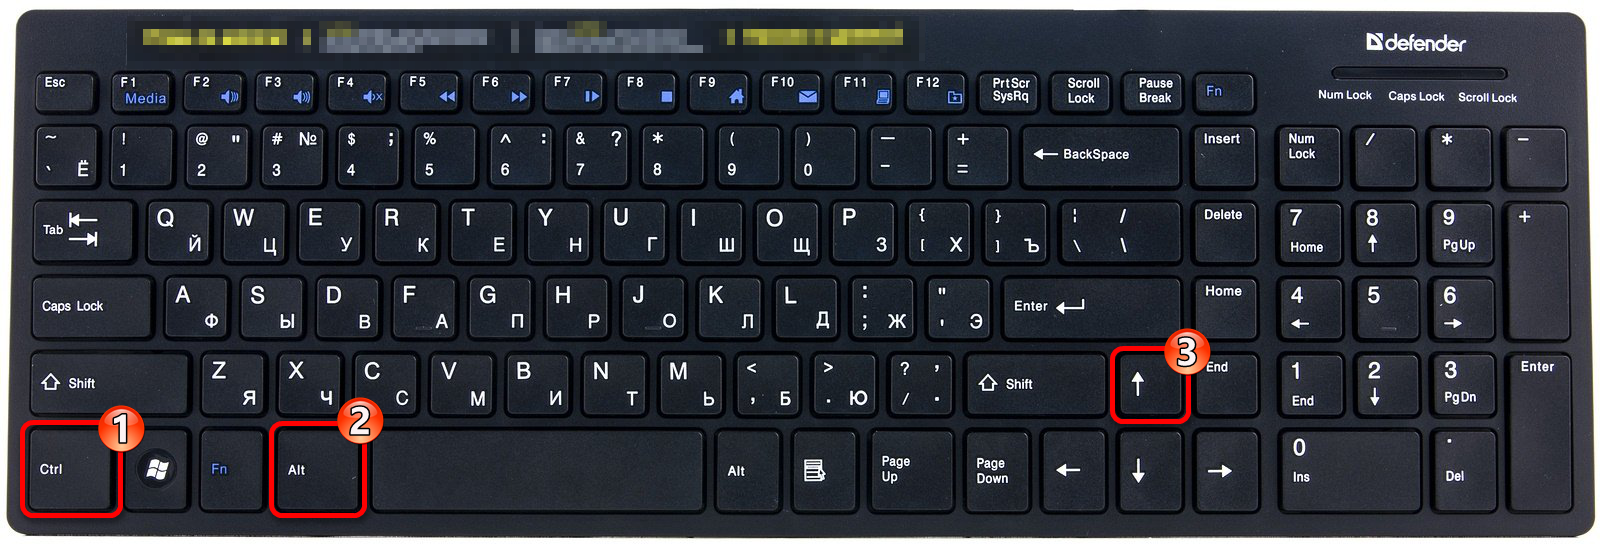 Сочетание клавиш для поворота ориентации экрана вверх в Виндовс 10